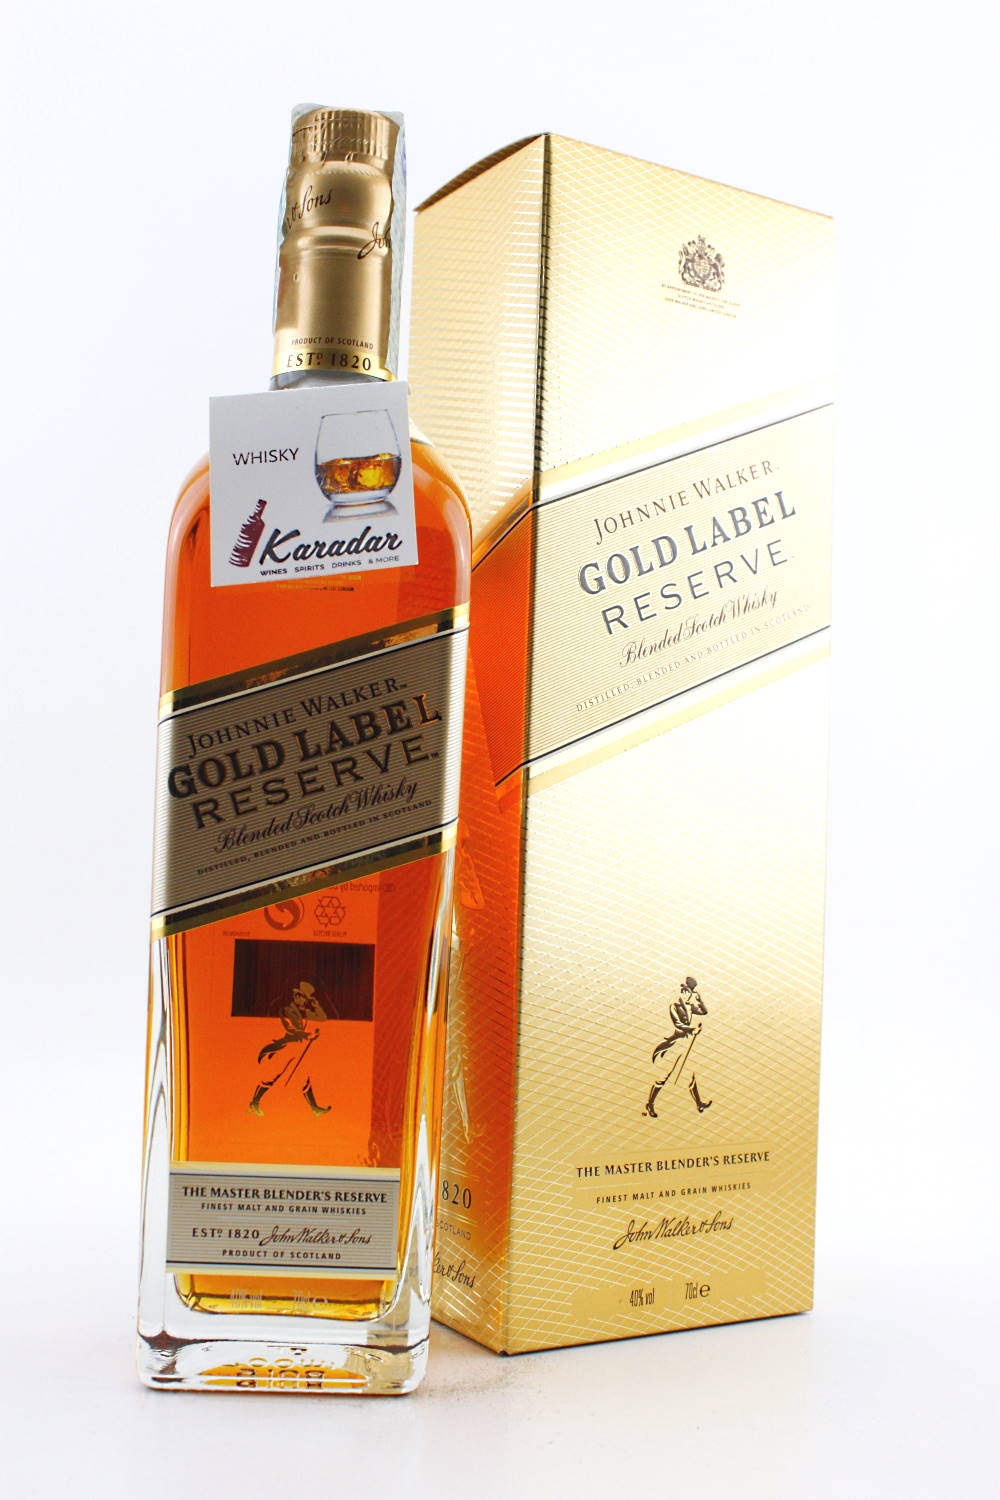 Johnnie walker gold label